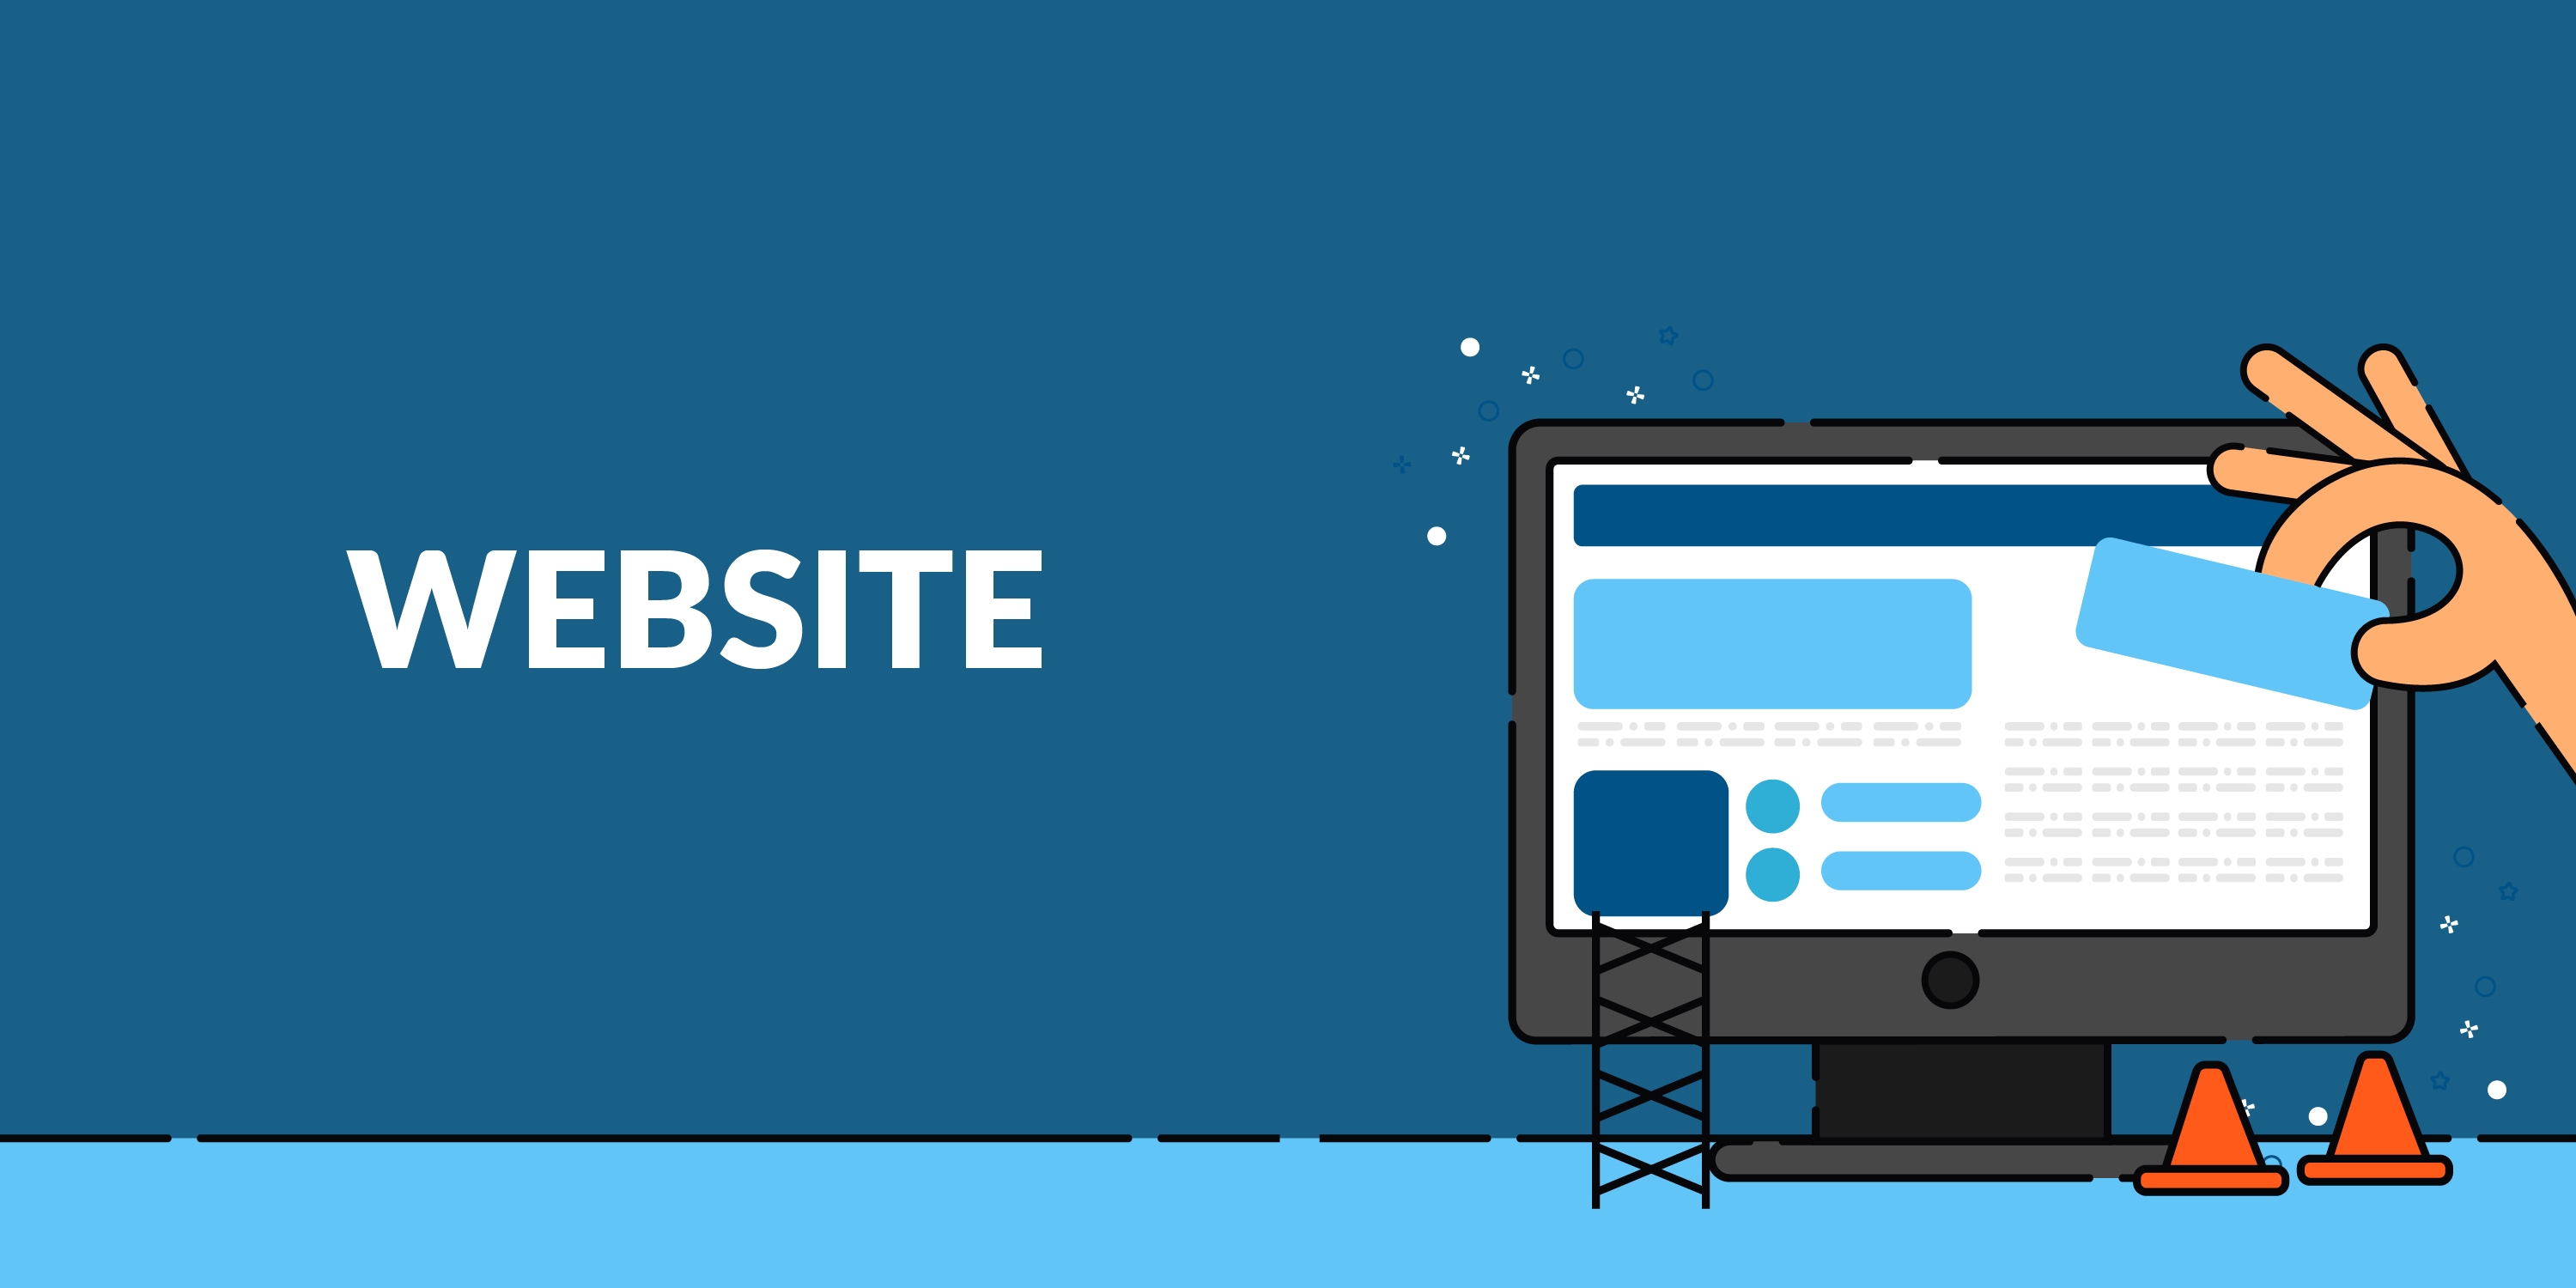 websites